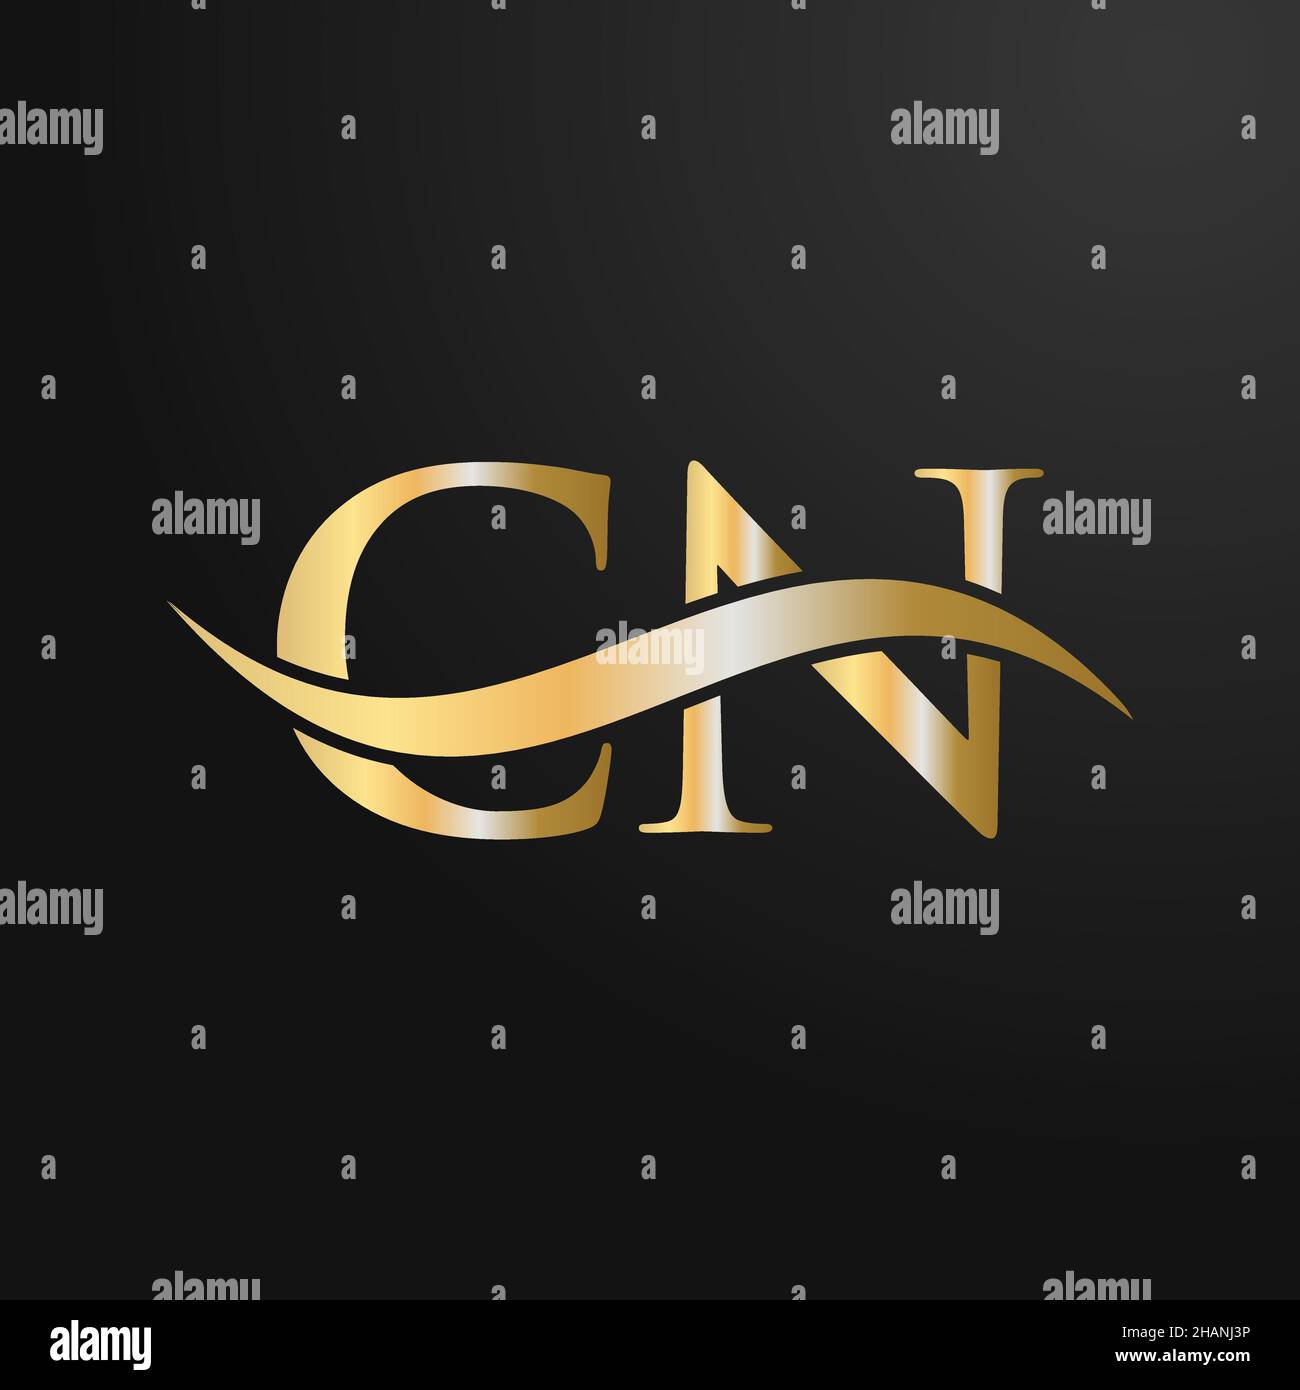 Design-Vorlage für das CN-Logo. CN, C N Buchstabe Logo Modern, flach, minimalistisch, Geschäft, Firmenzeichen Stock Vektor